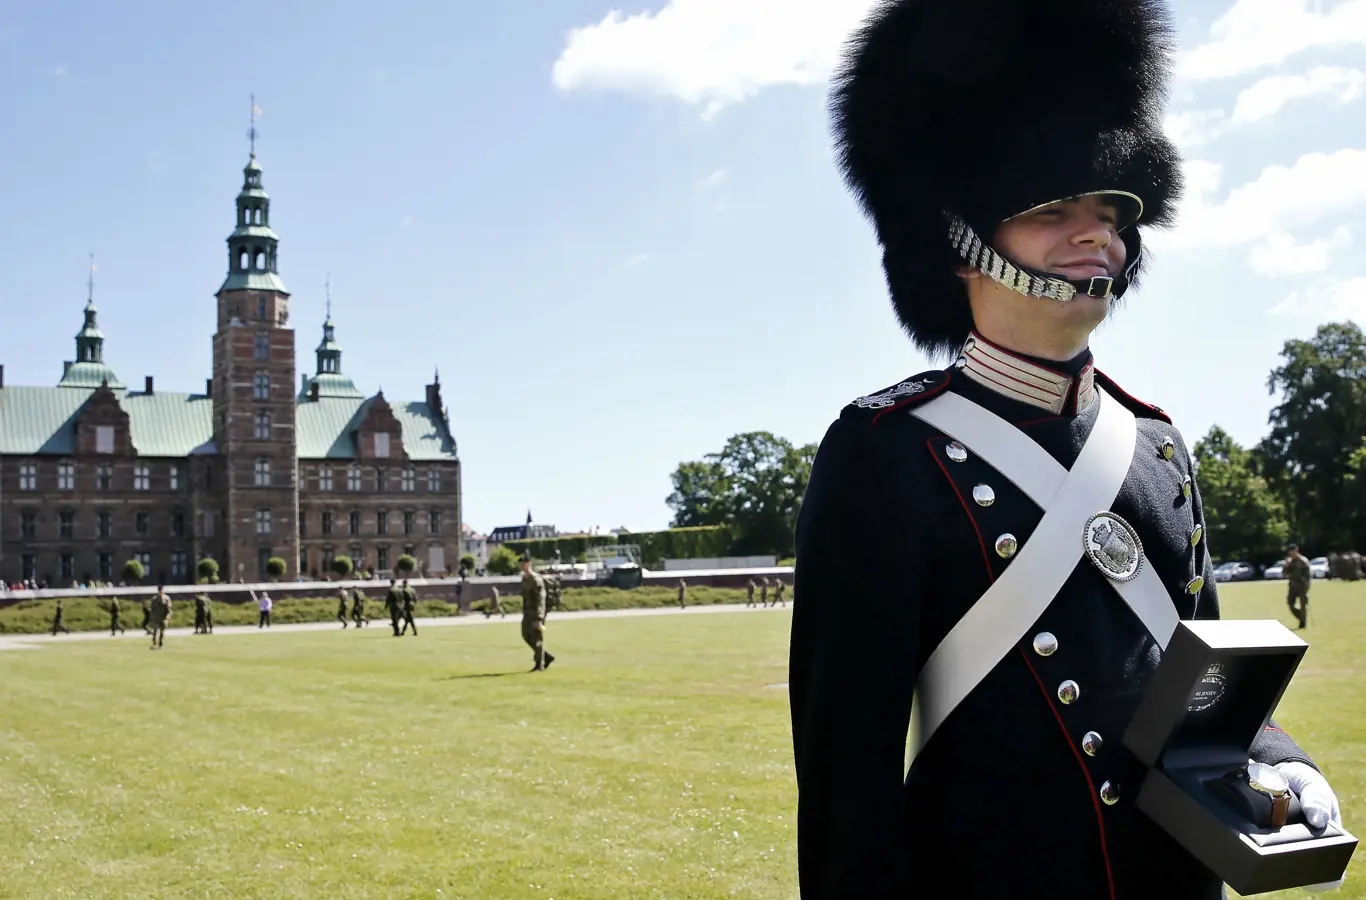 Garder Jacob Kjær fra Ballerup modtog Dronningens Ur ved seneste afskedsparade den 26. juni 2015.